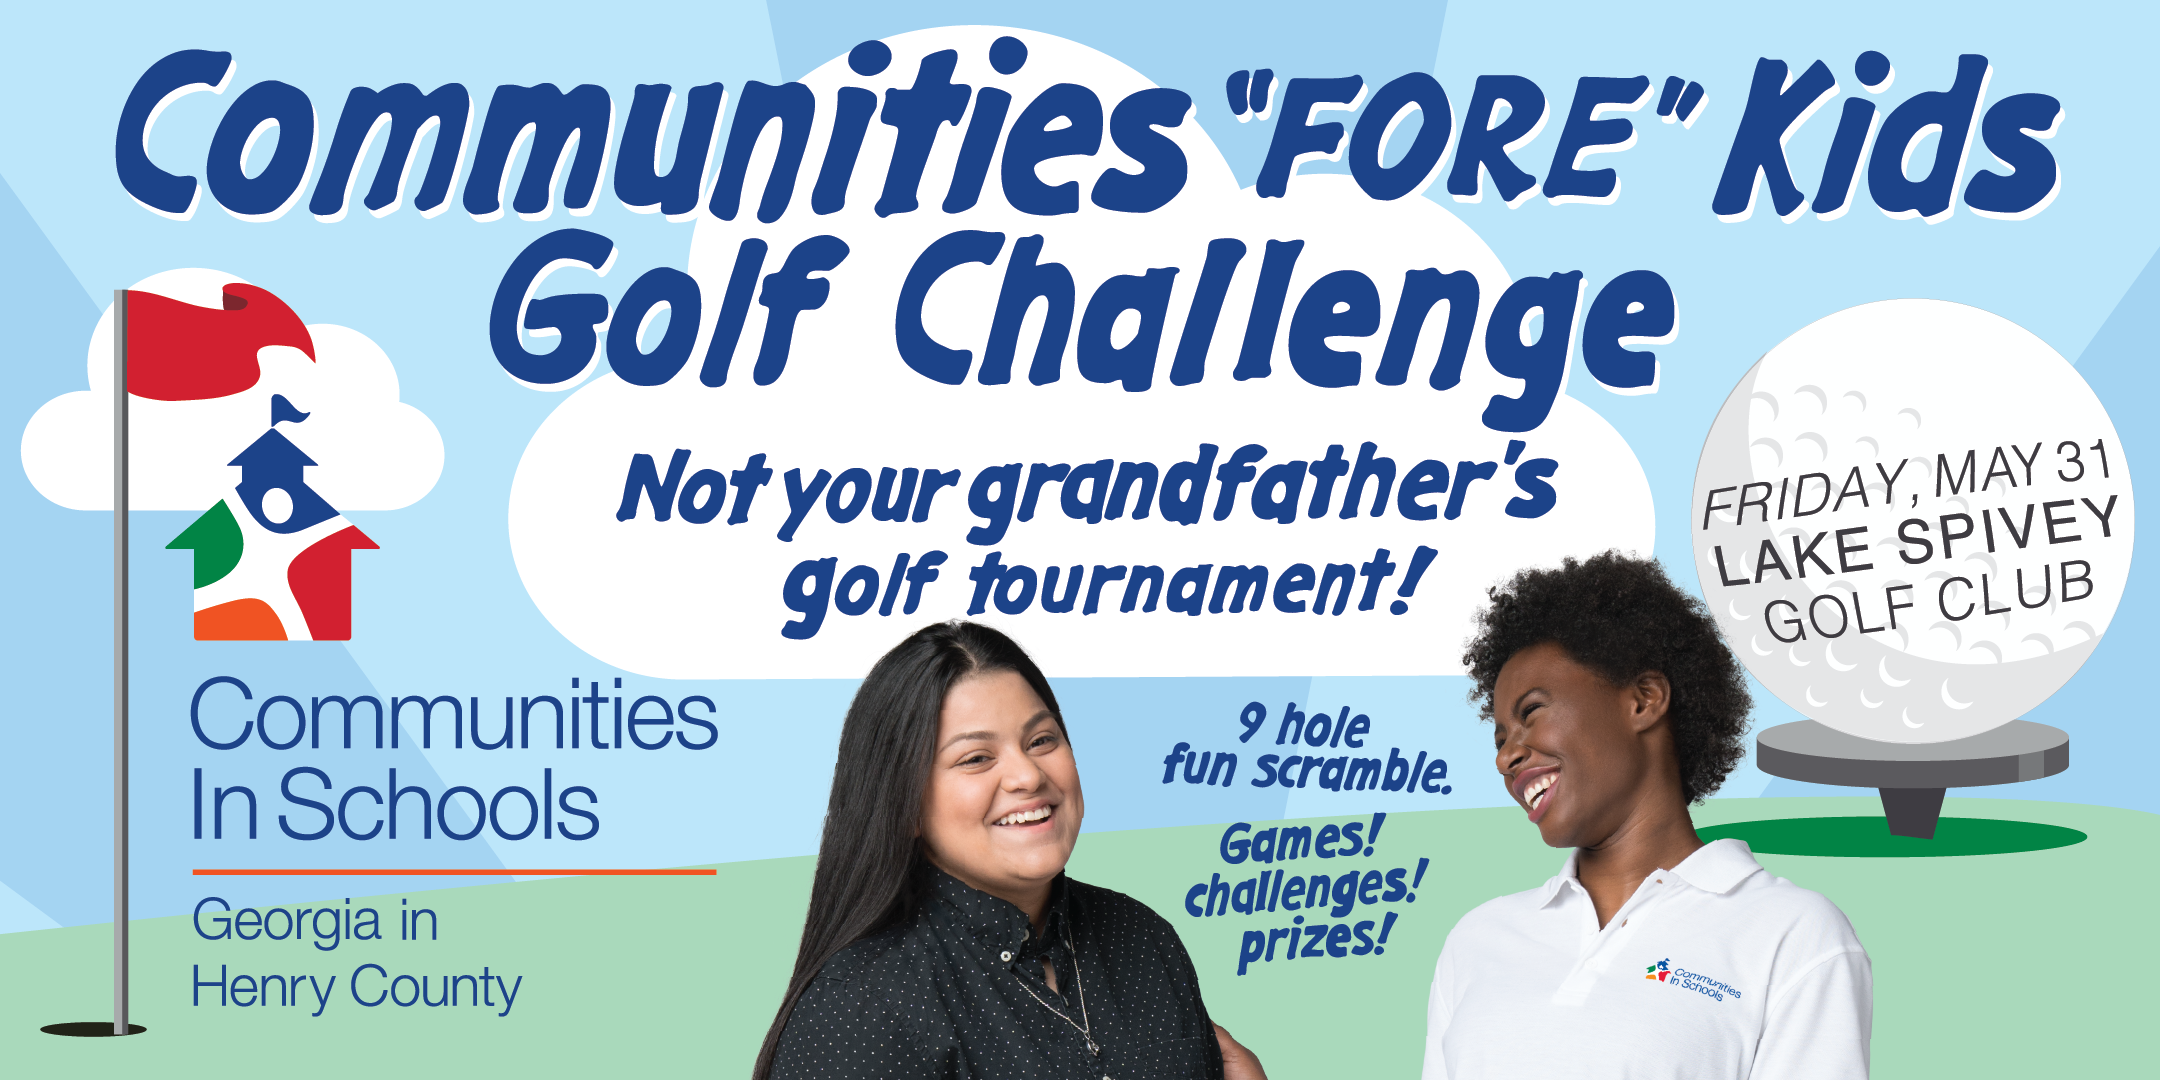 Communities "FORE" Schools Golf Challenge